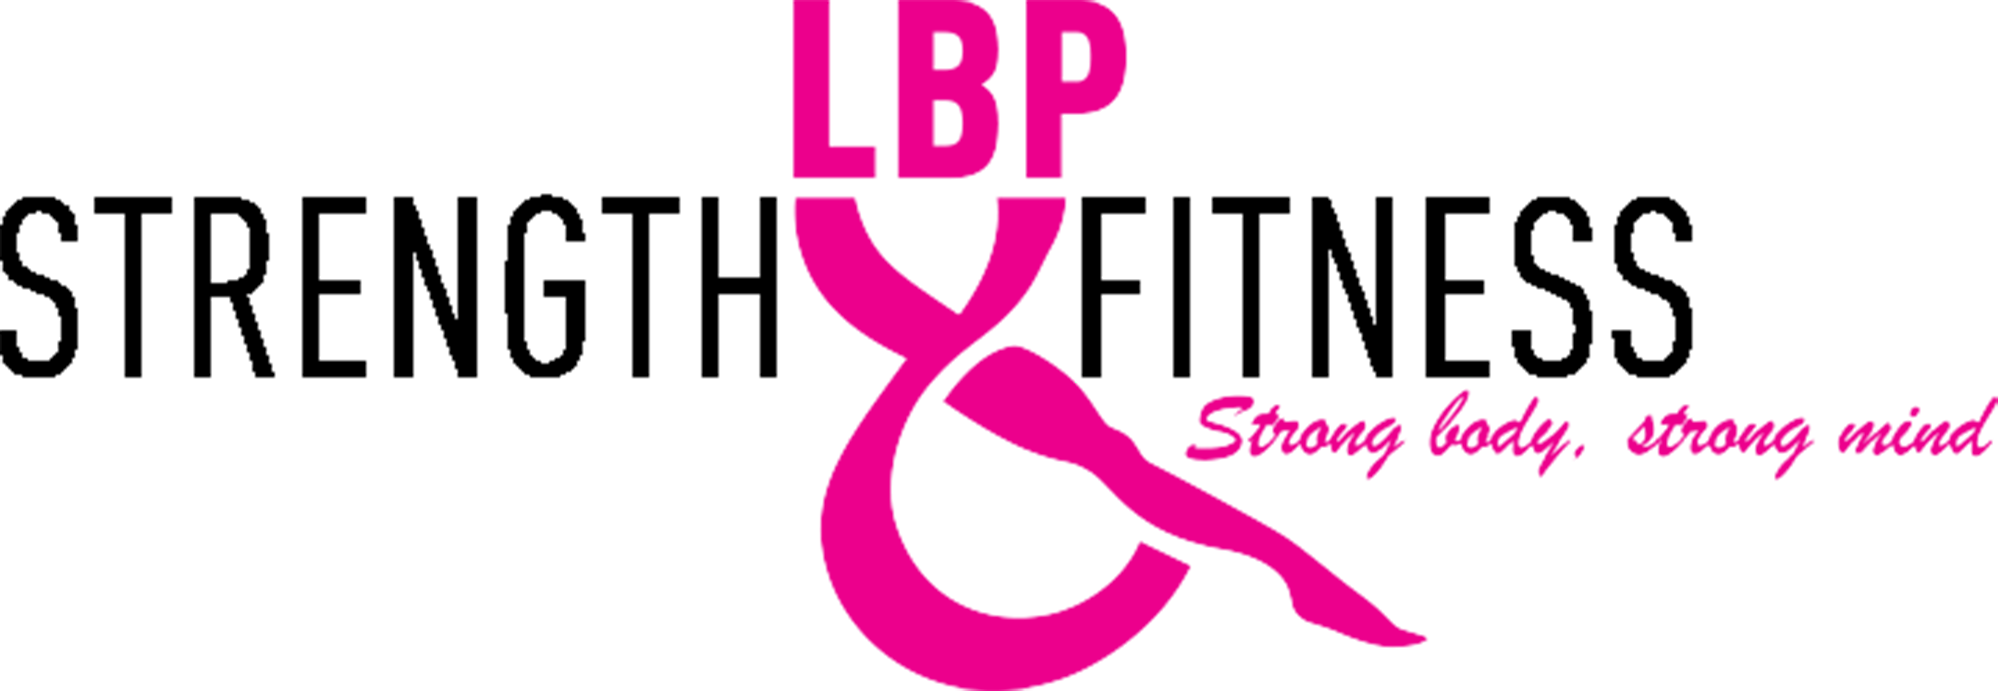 LBP strenght fitness.png - Foredrag - Smertefribevægelse